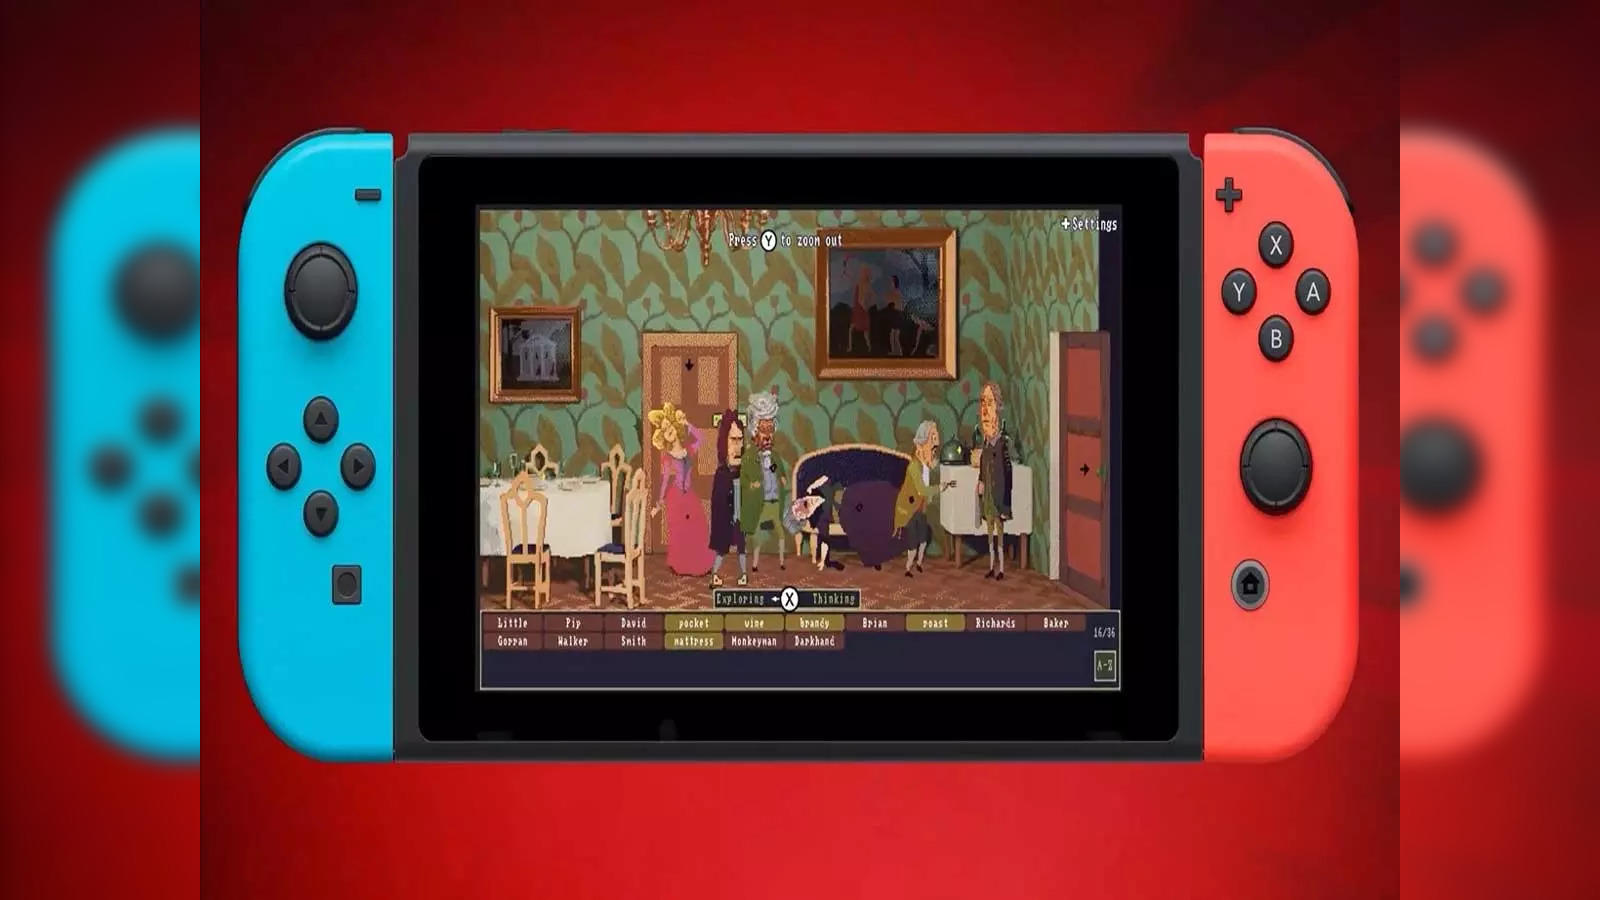 Everybody 1-2 Switch! - Nintendo Switch